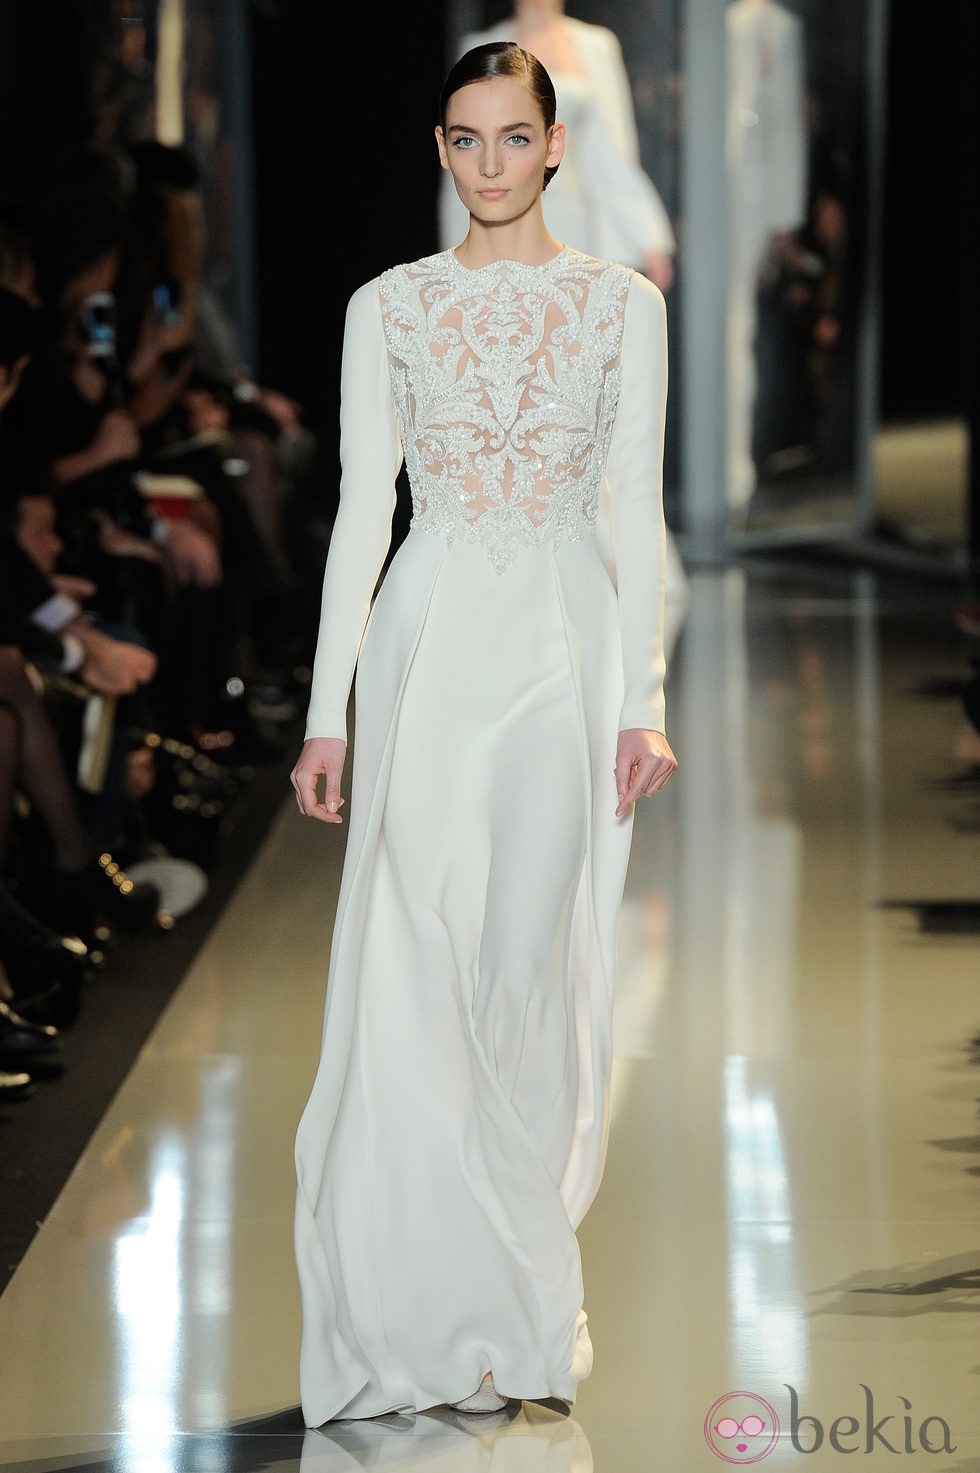 Vestido blanco de la colección primavera/verano 2013 de Elie Saab de la Semana de la Alta Costura de París